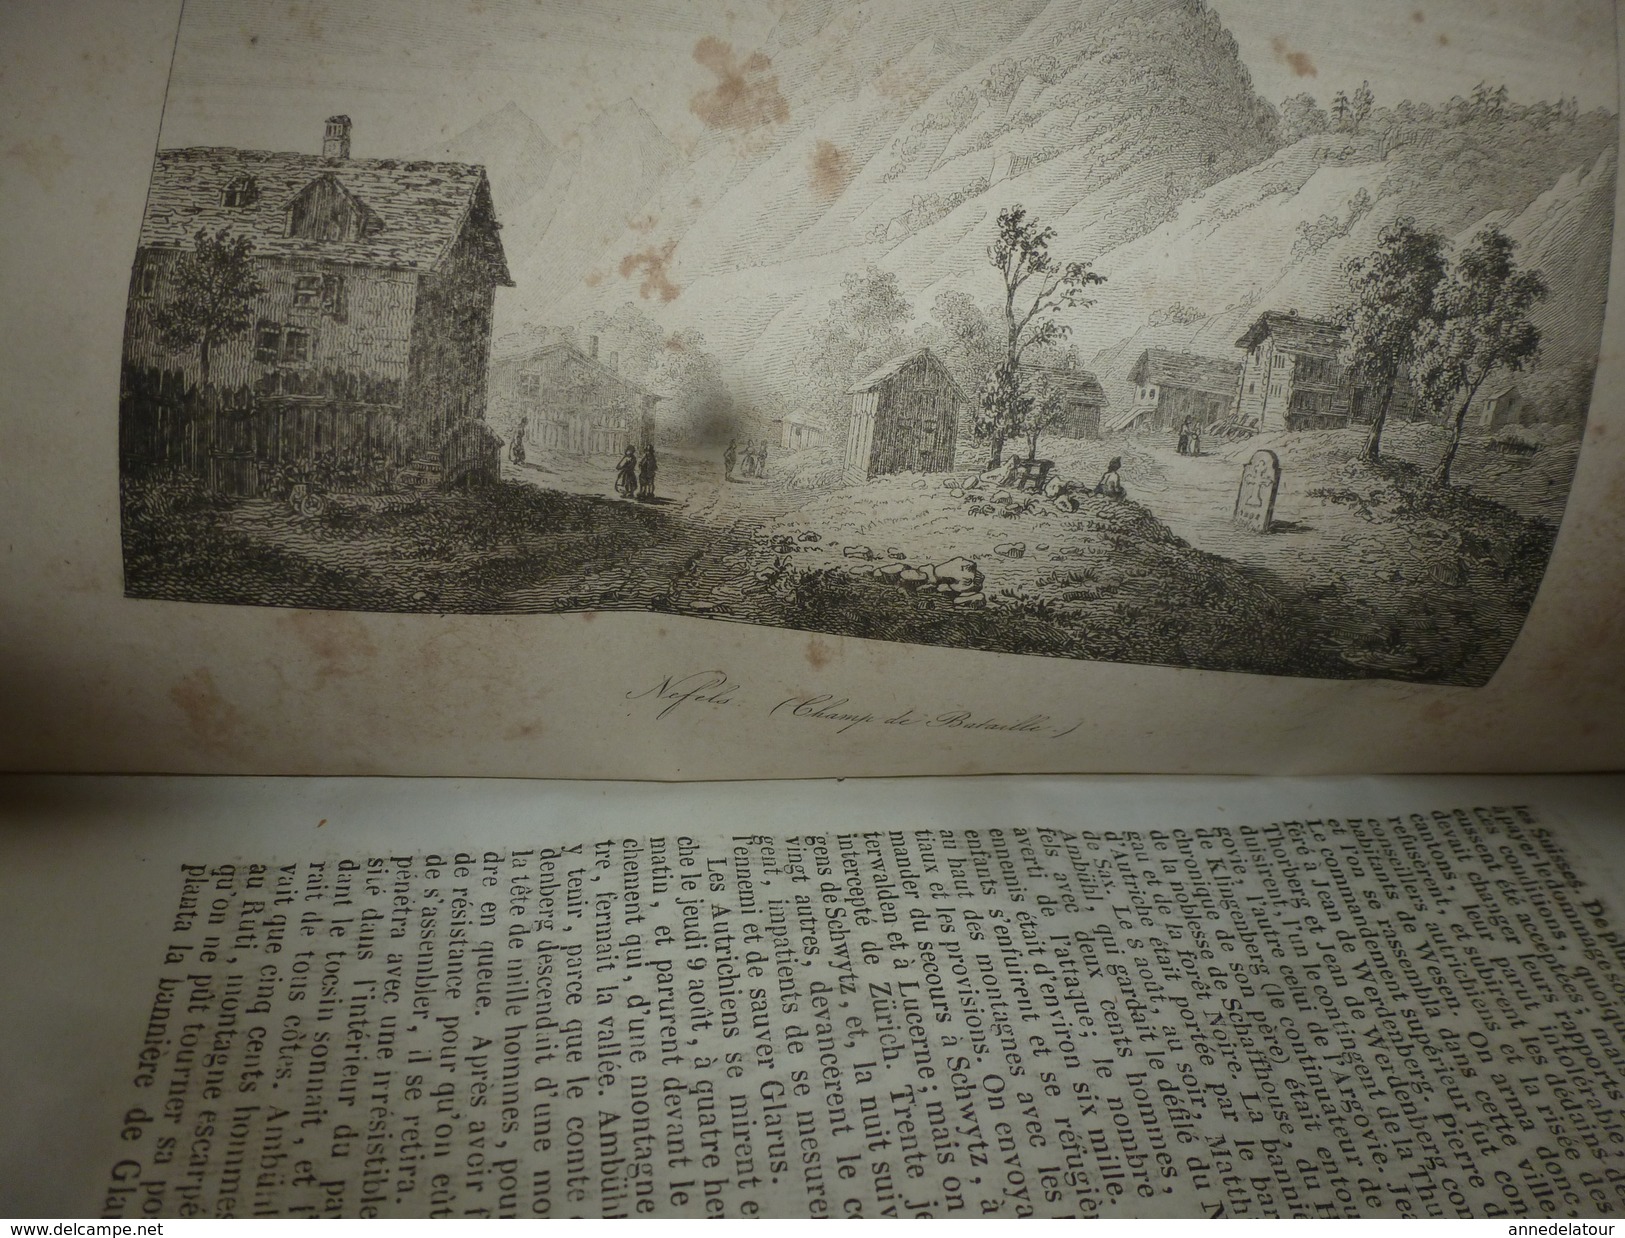 1838  Tout sur les ORIGINES de la SUISSE ,moeurs ,coutumes,etc : par M. de Golbéry, avec nombreuses gravures hors textes